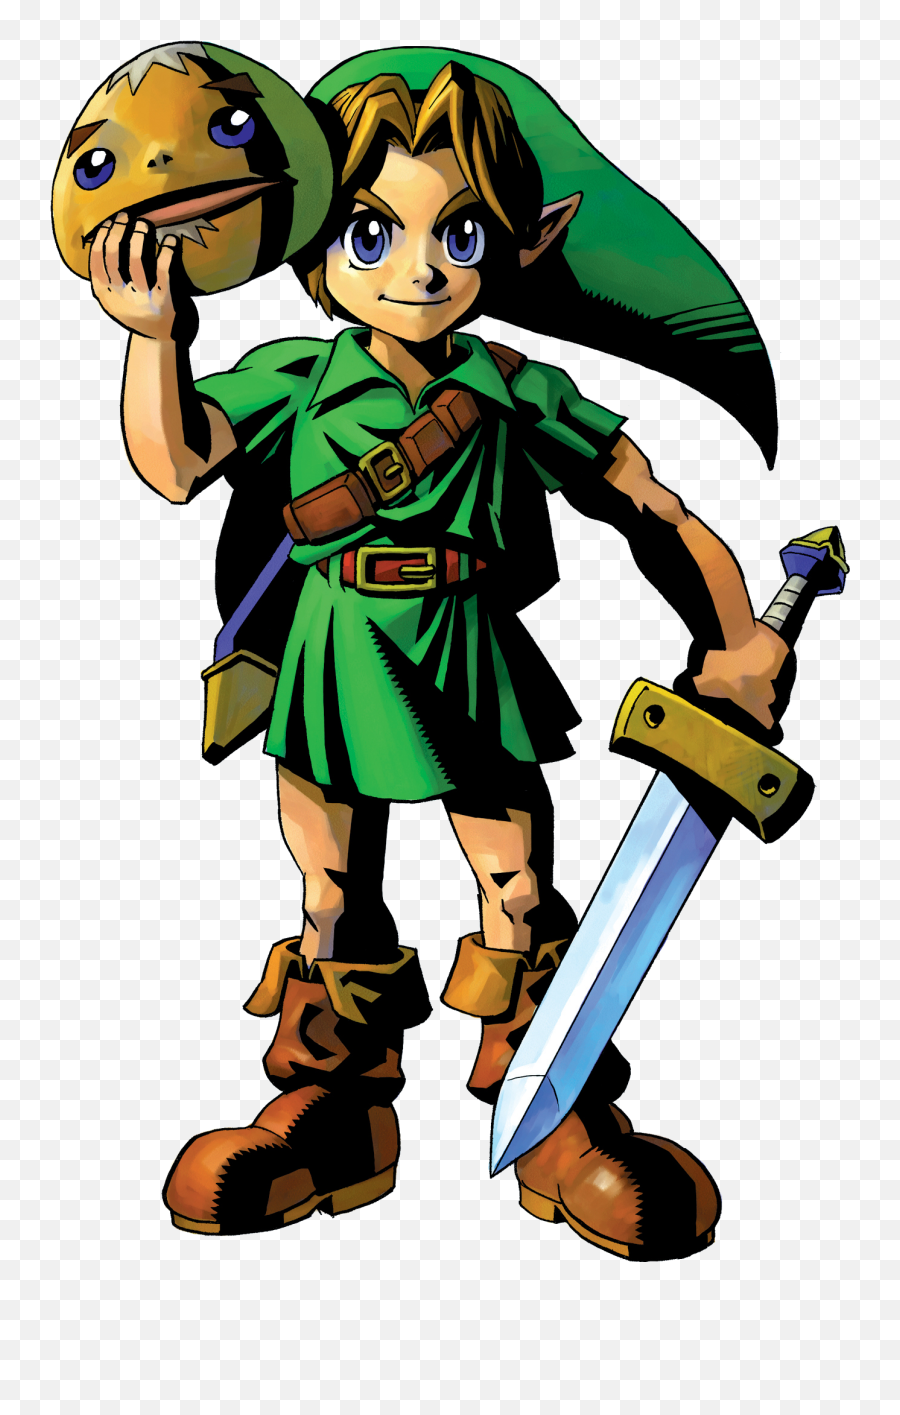 Link With The Goron Mask Poor - Legend Of Zelda Mask Link Png,Majora's Mask Png